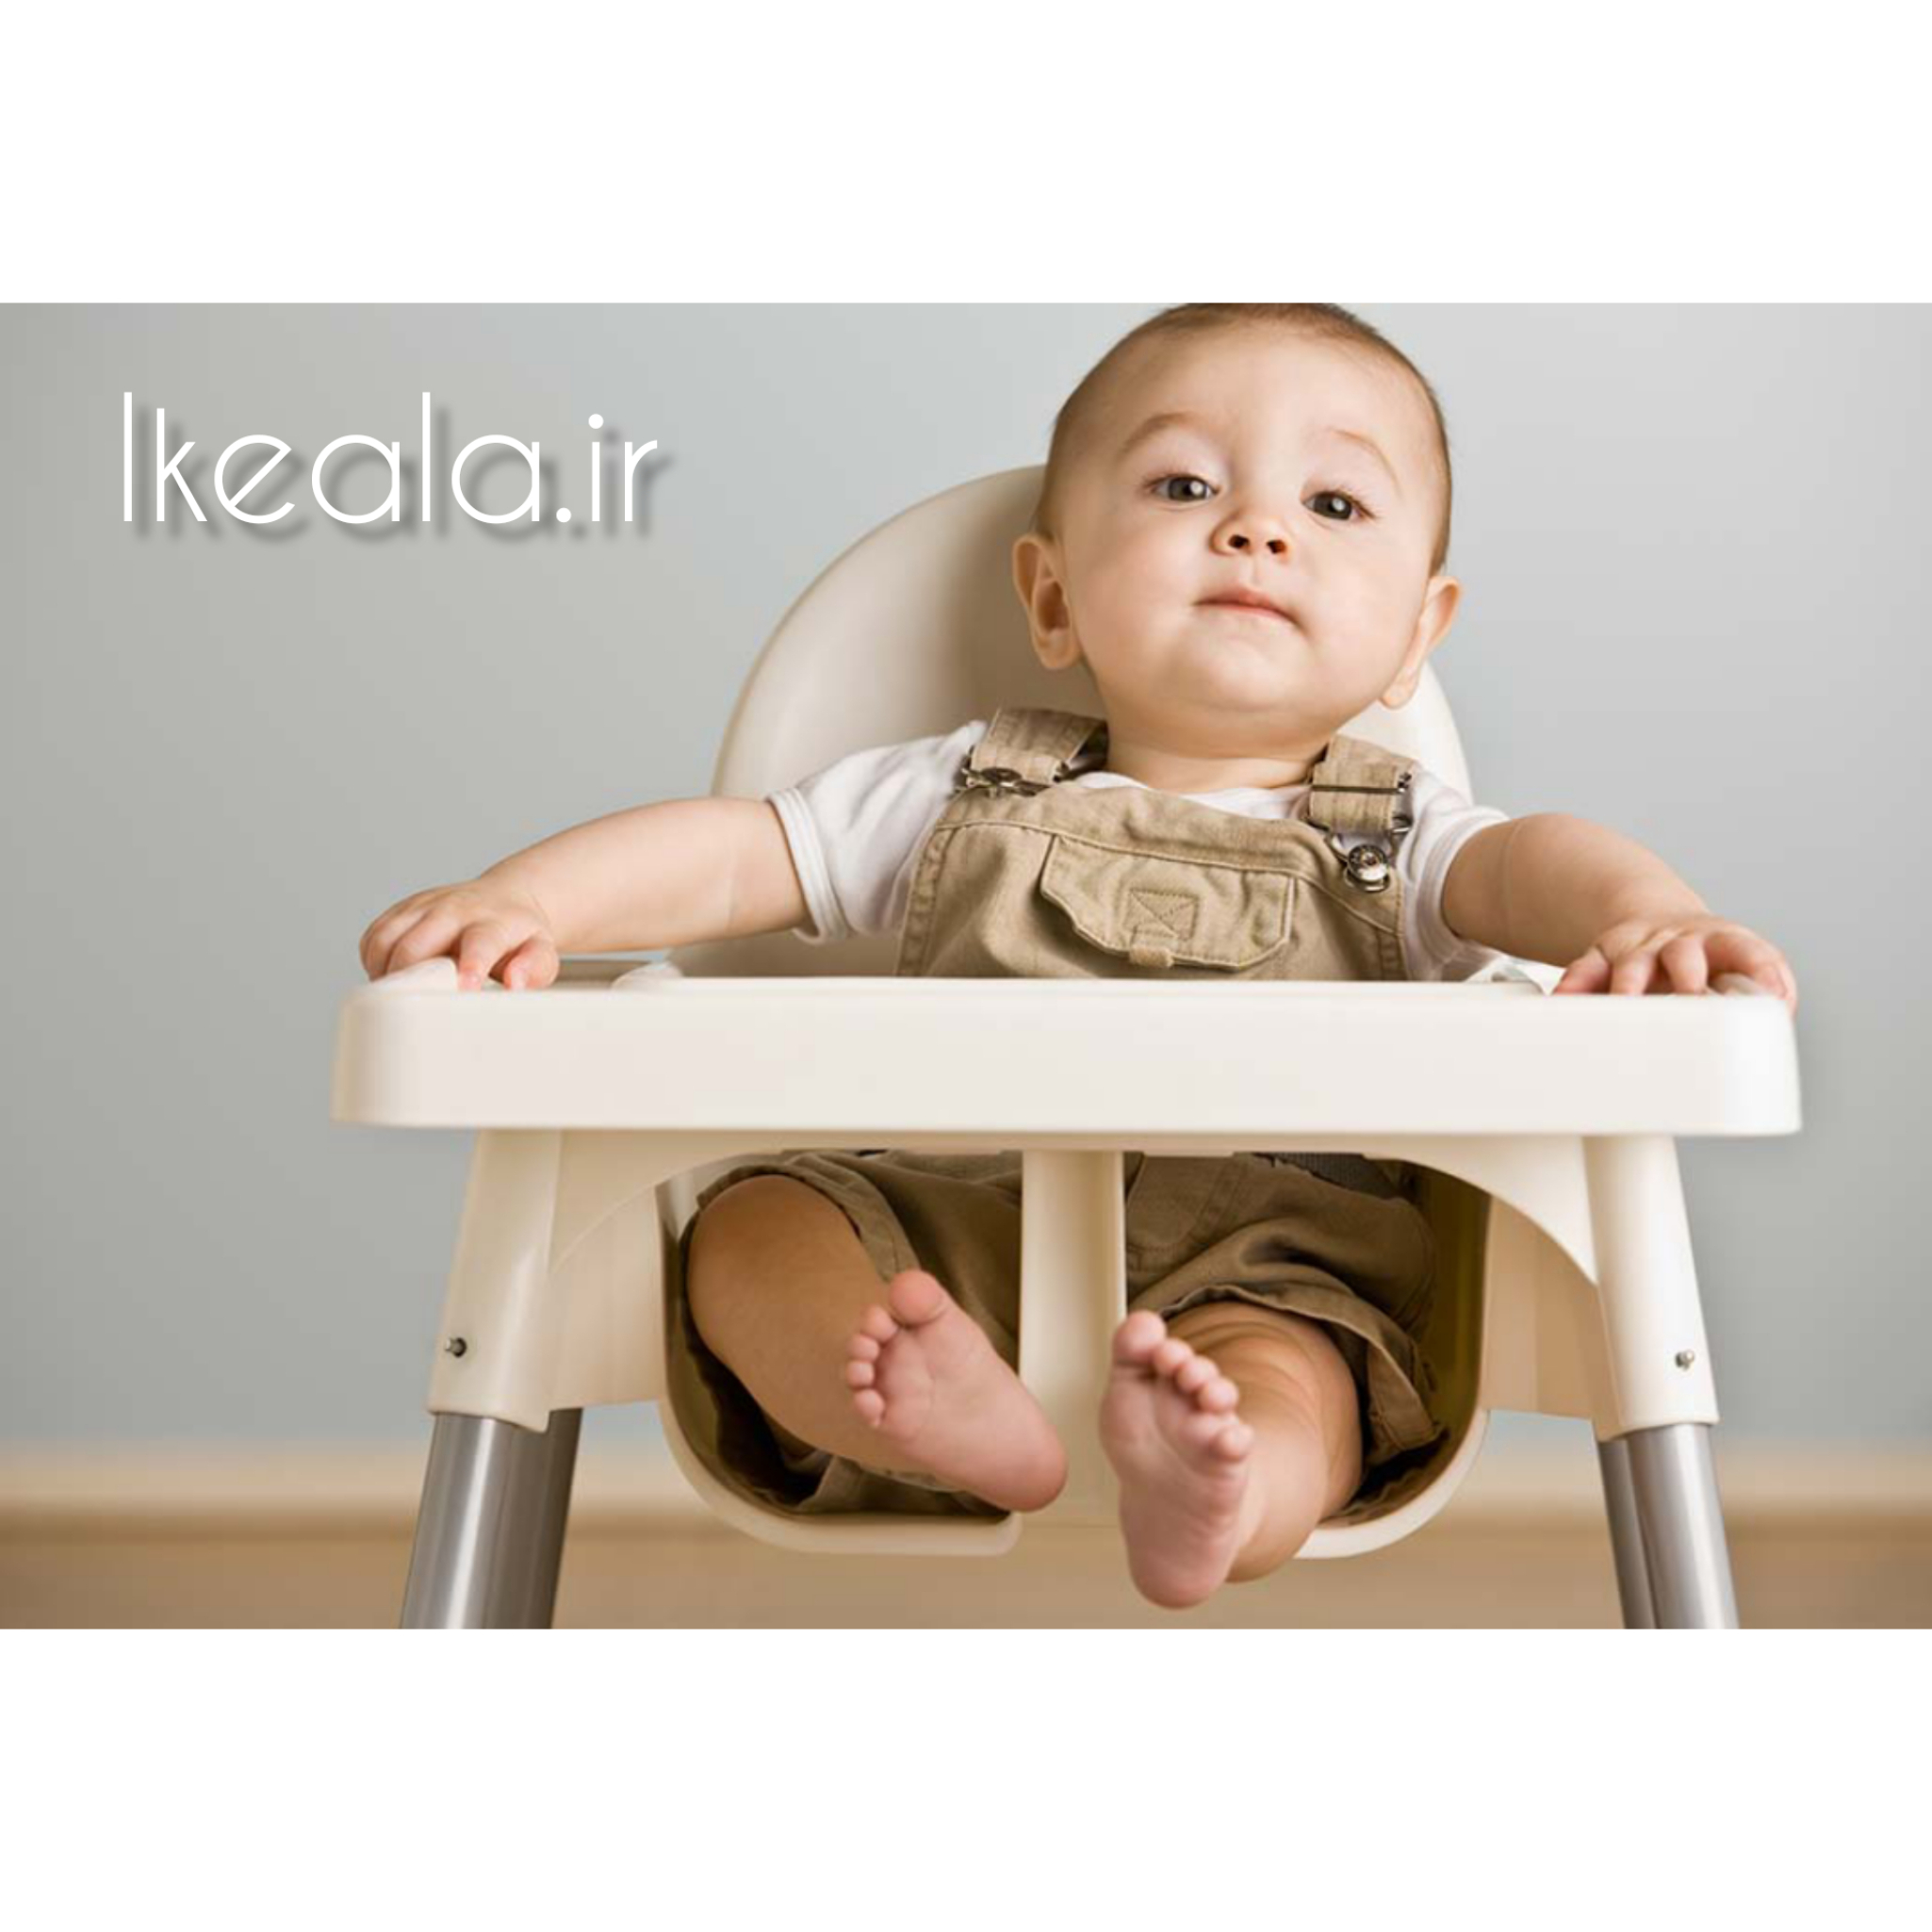  بخش گسترده ای از محصولات شرکت ایکیا مربوط به نوزادان است. صندلی غذاخوری کودک ایکیا ANTILOP ساخته شده از پایه های استیل 